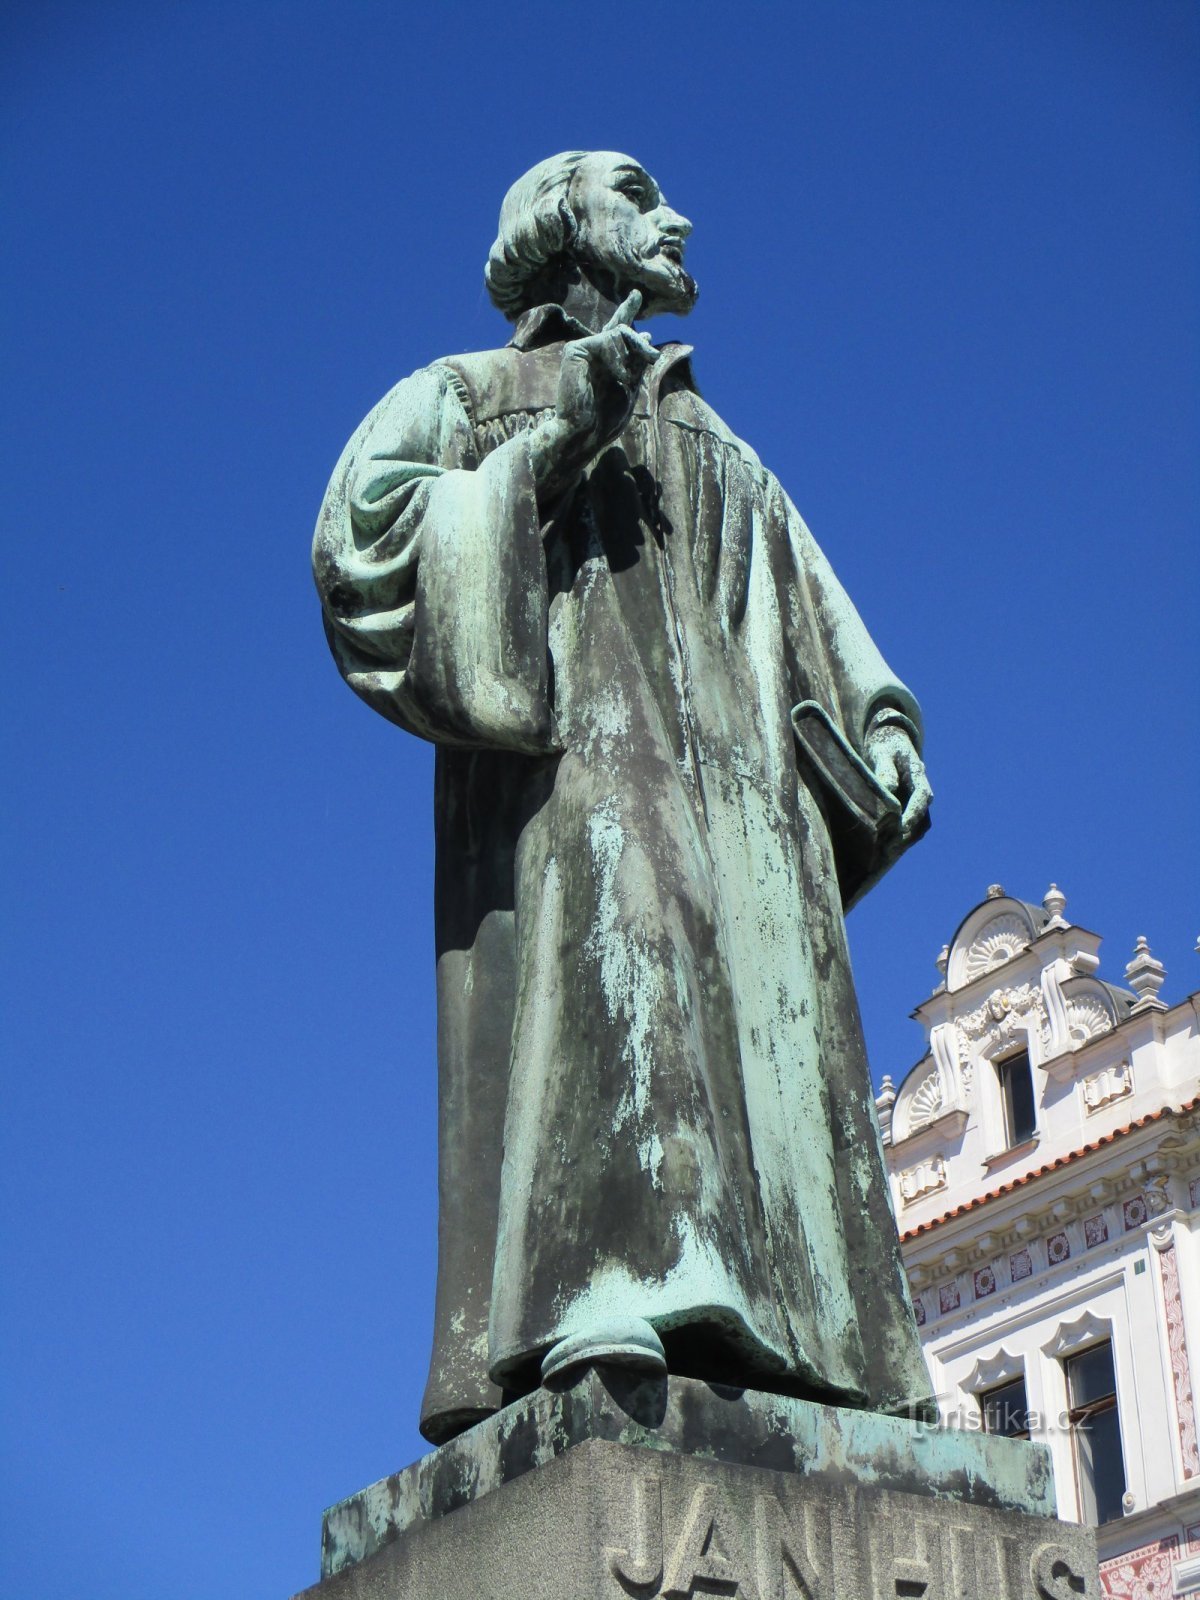 M. Jan Hus 纪念碑（Roudnice nad Labem，31.7.2020 年 XNUMX 月 XNUMX 日）